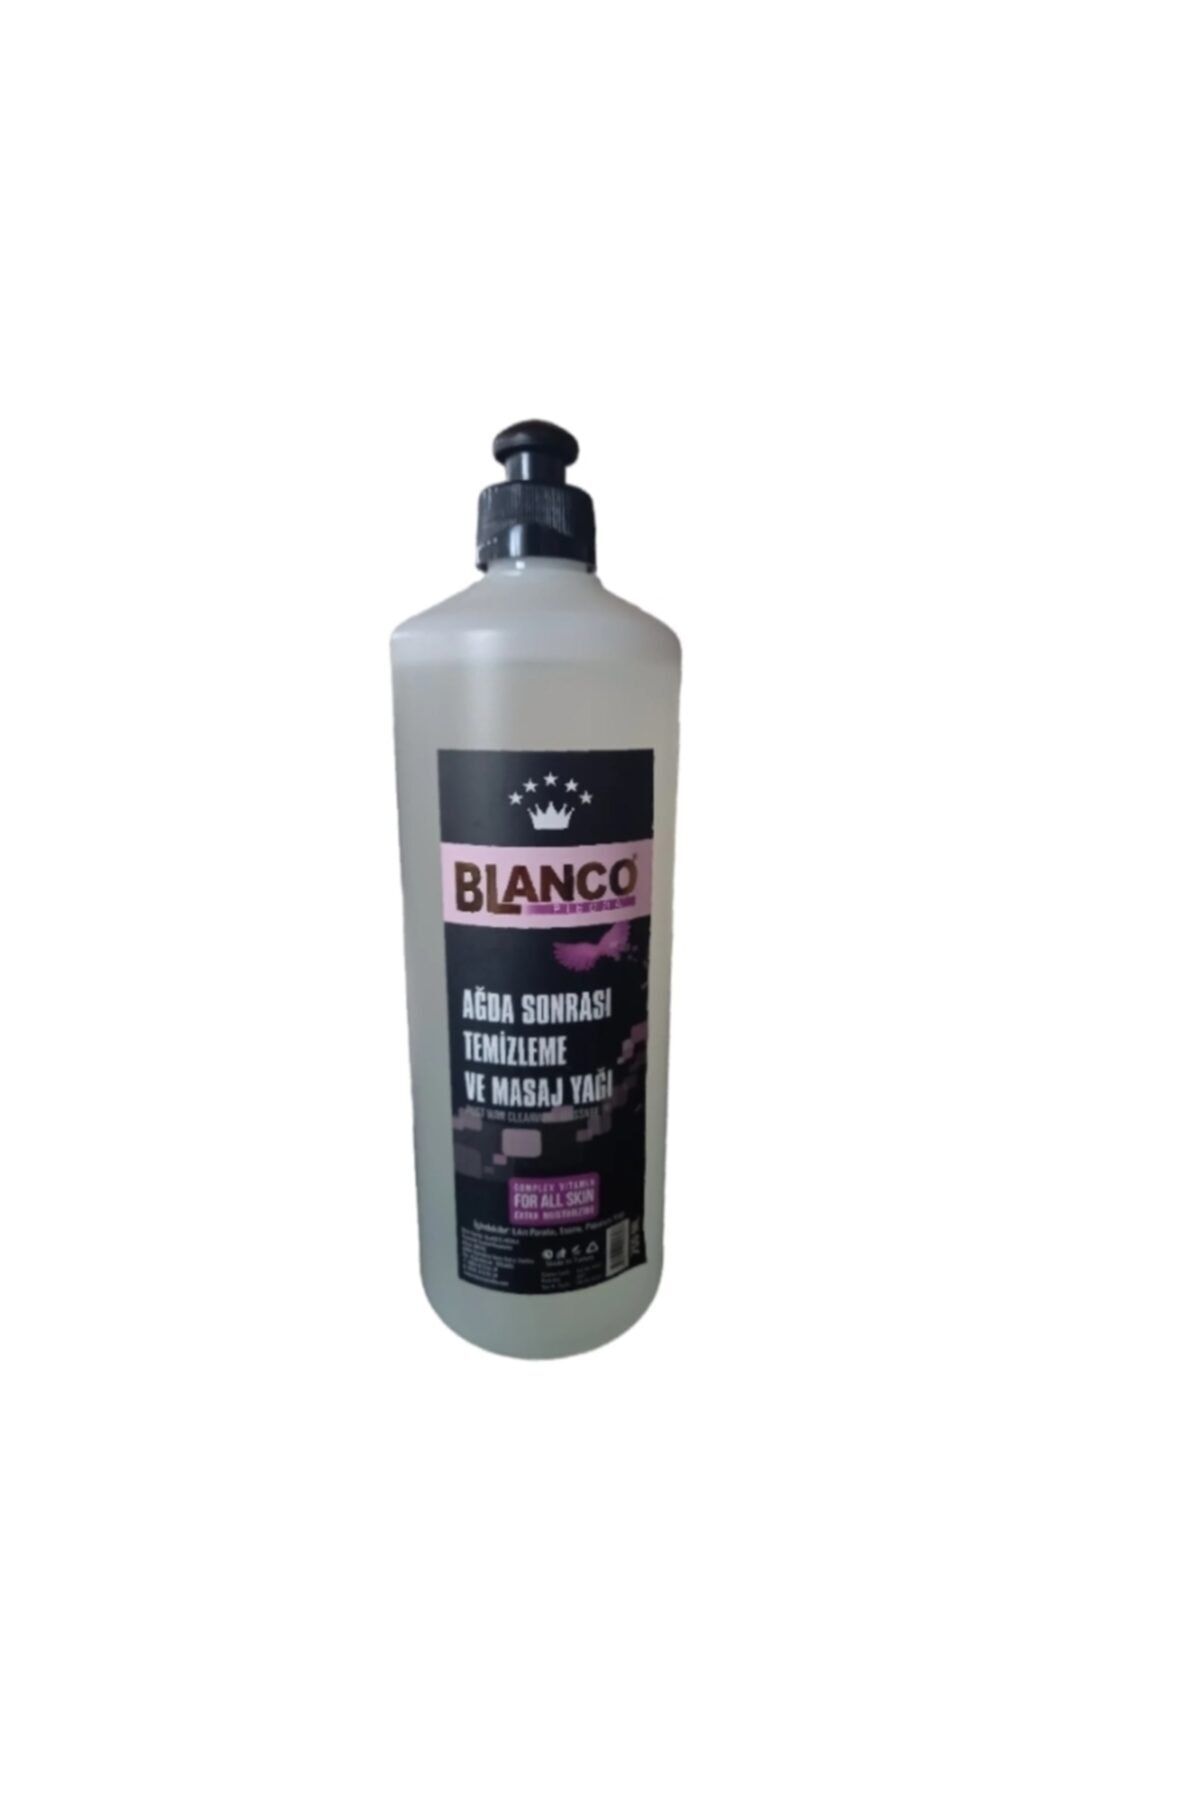 Blanco Ağda Sonrası Temizleme Ve Masaj Yağı 750 ml